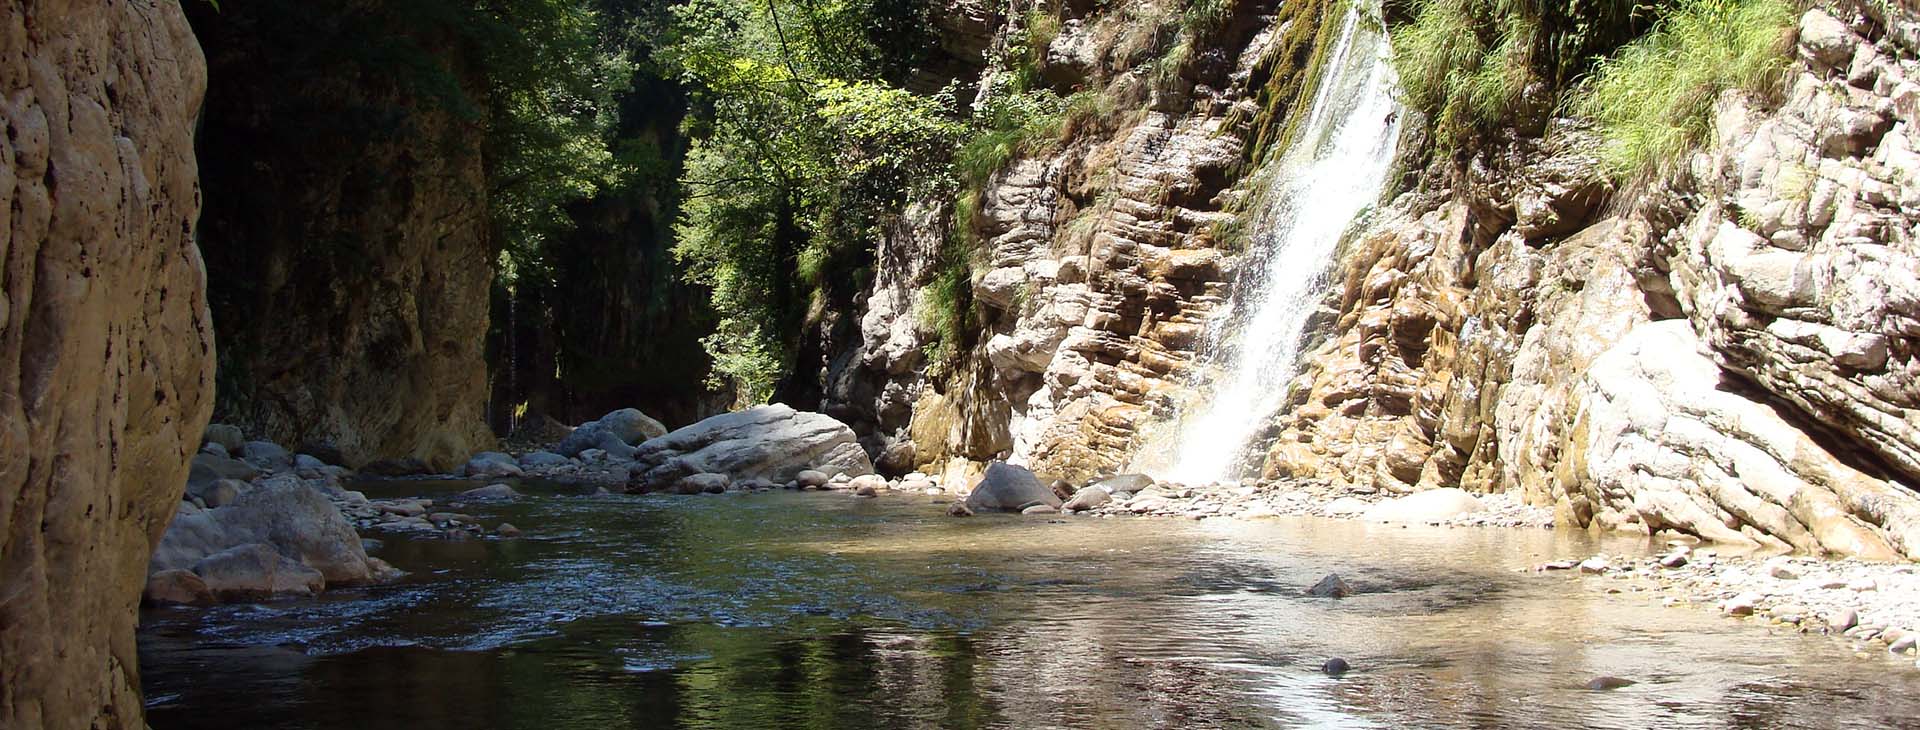 Krikelopotemos river / Pantavrechi gorge, Evritania